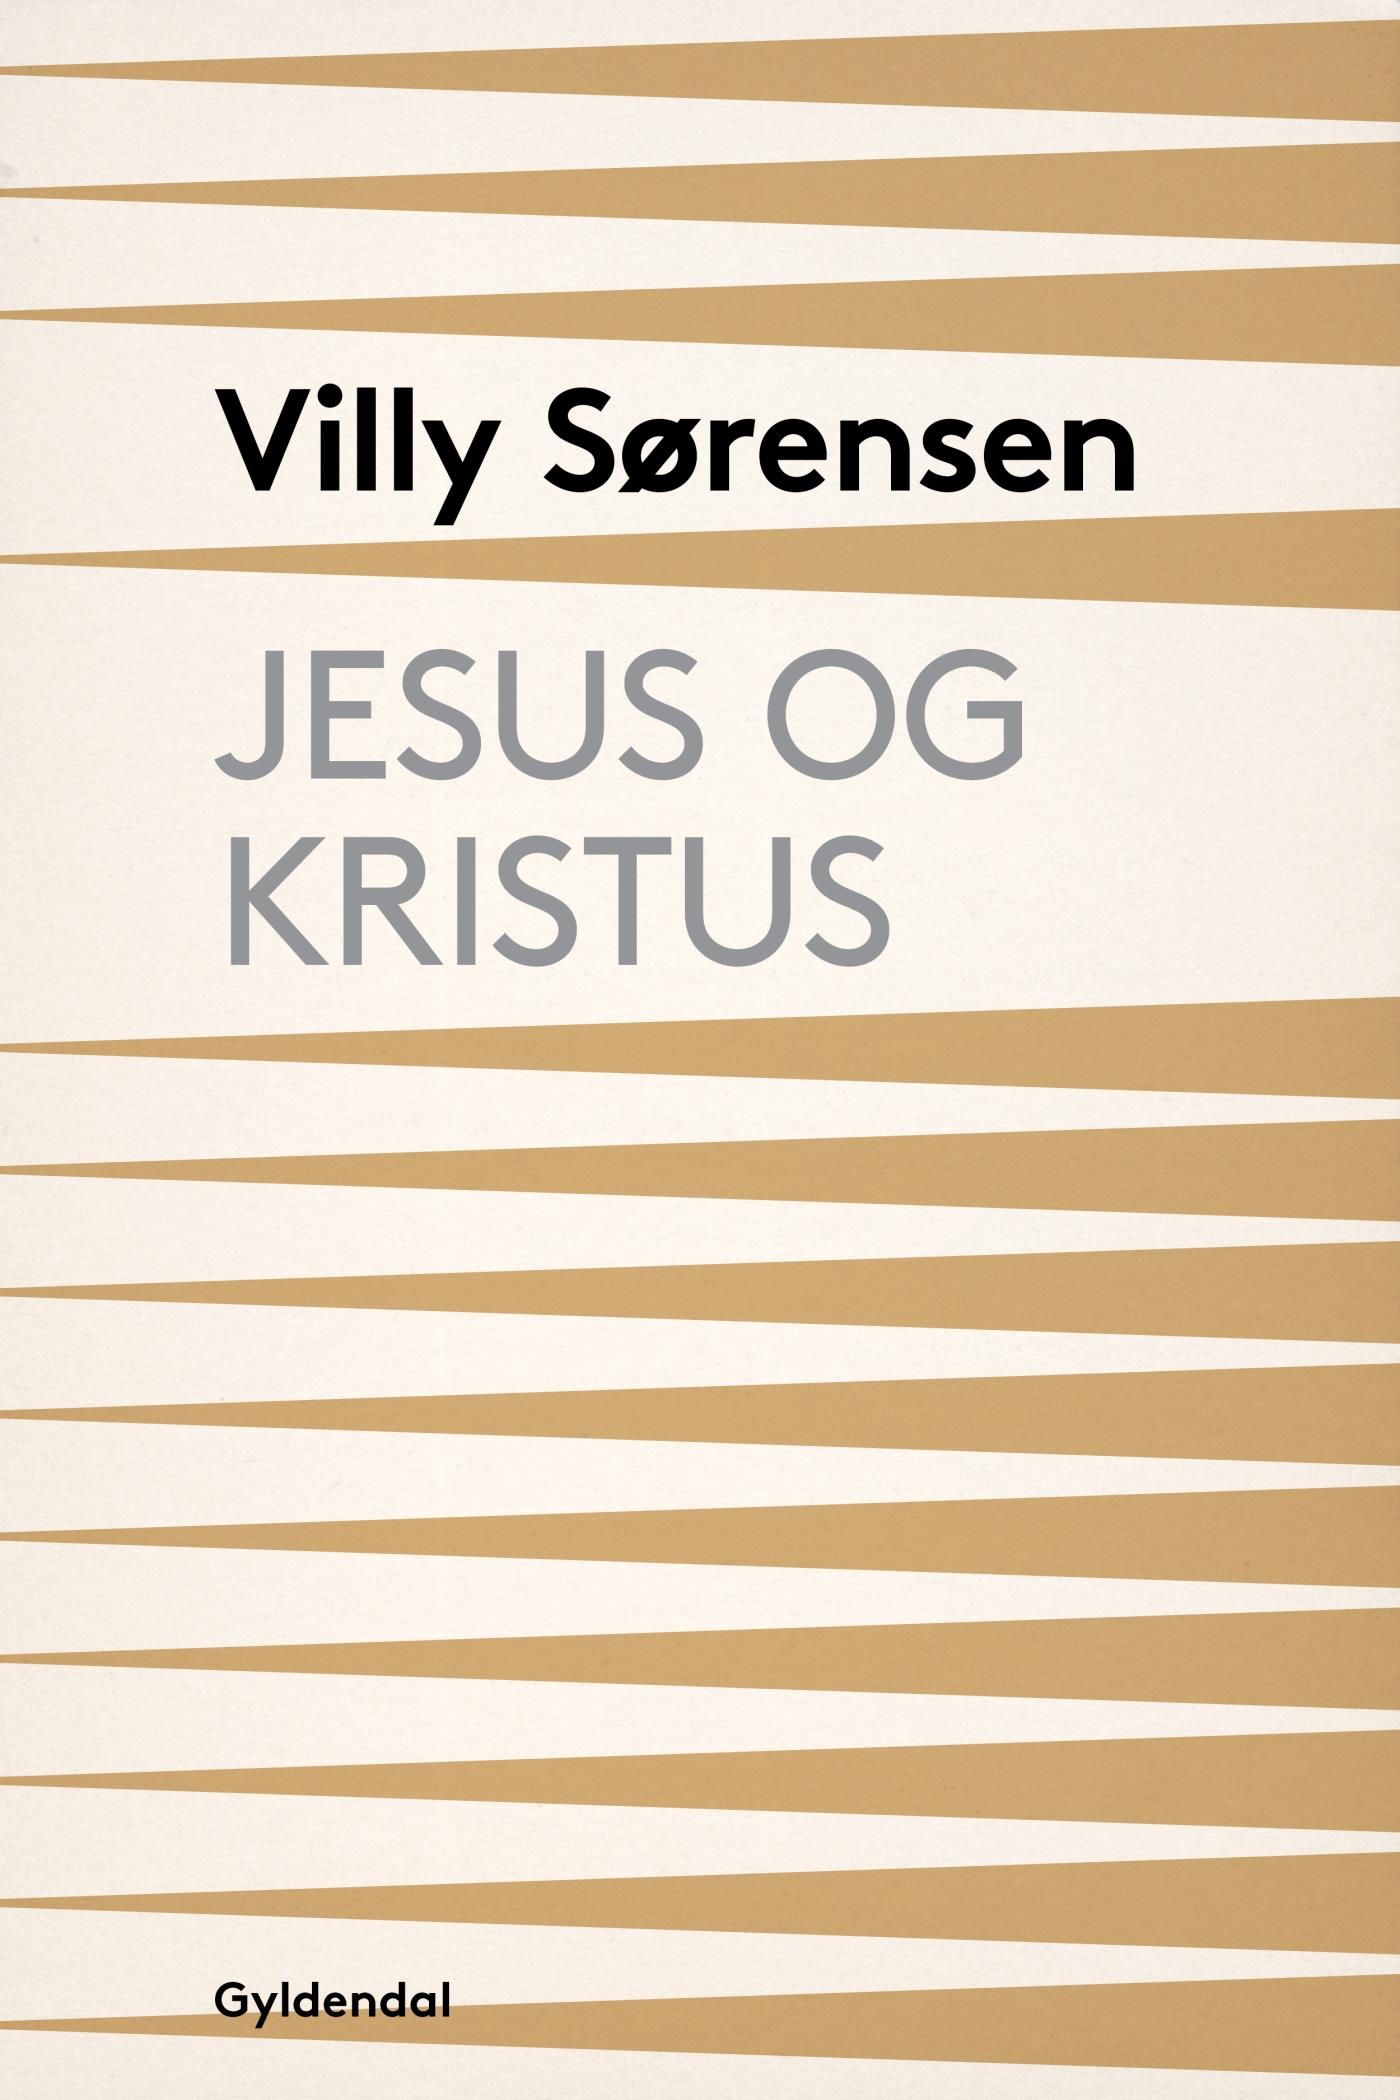 Jesus og Kristus, e-bog af Villy Sørensen